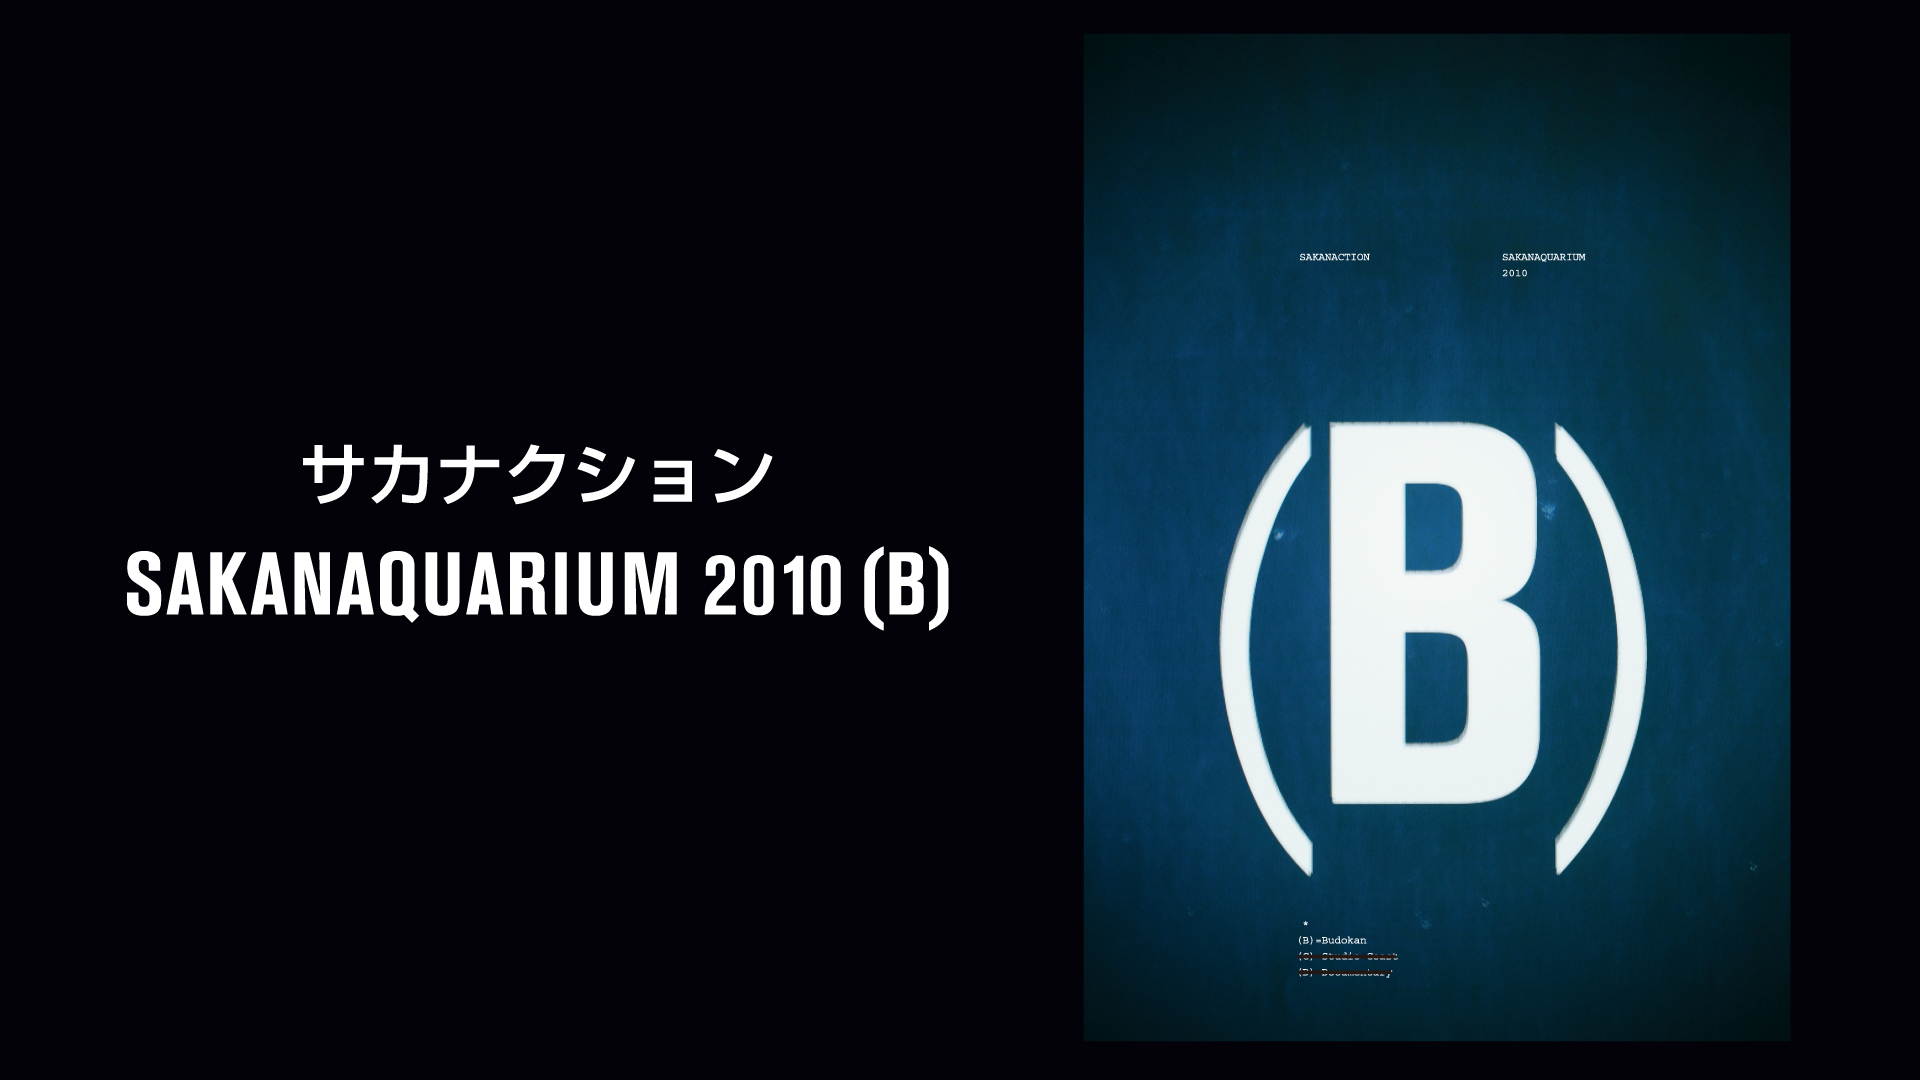 SAKANAQUARIUM 2010 (B)(音楽・ライブ / 2011) - 動画配信 | U-NEXT 31日間無料トライアル